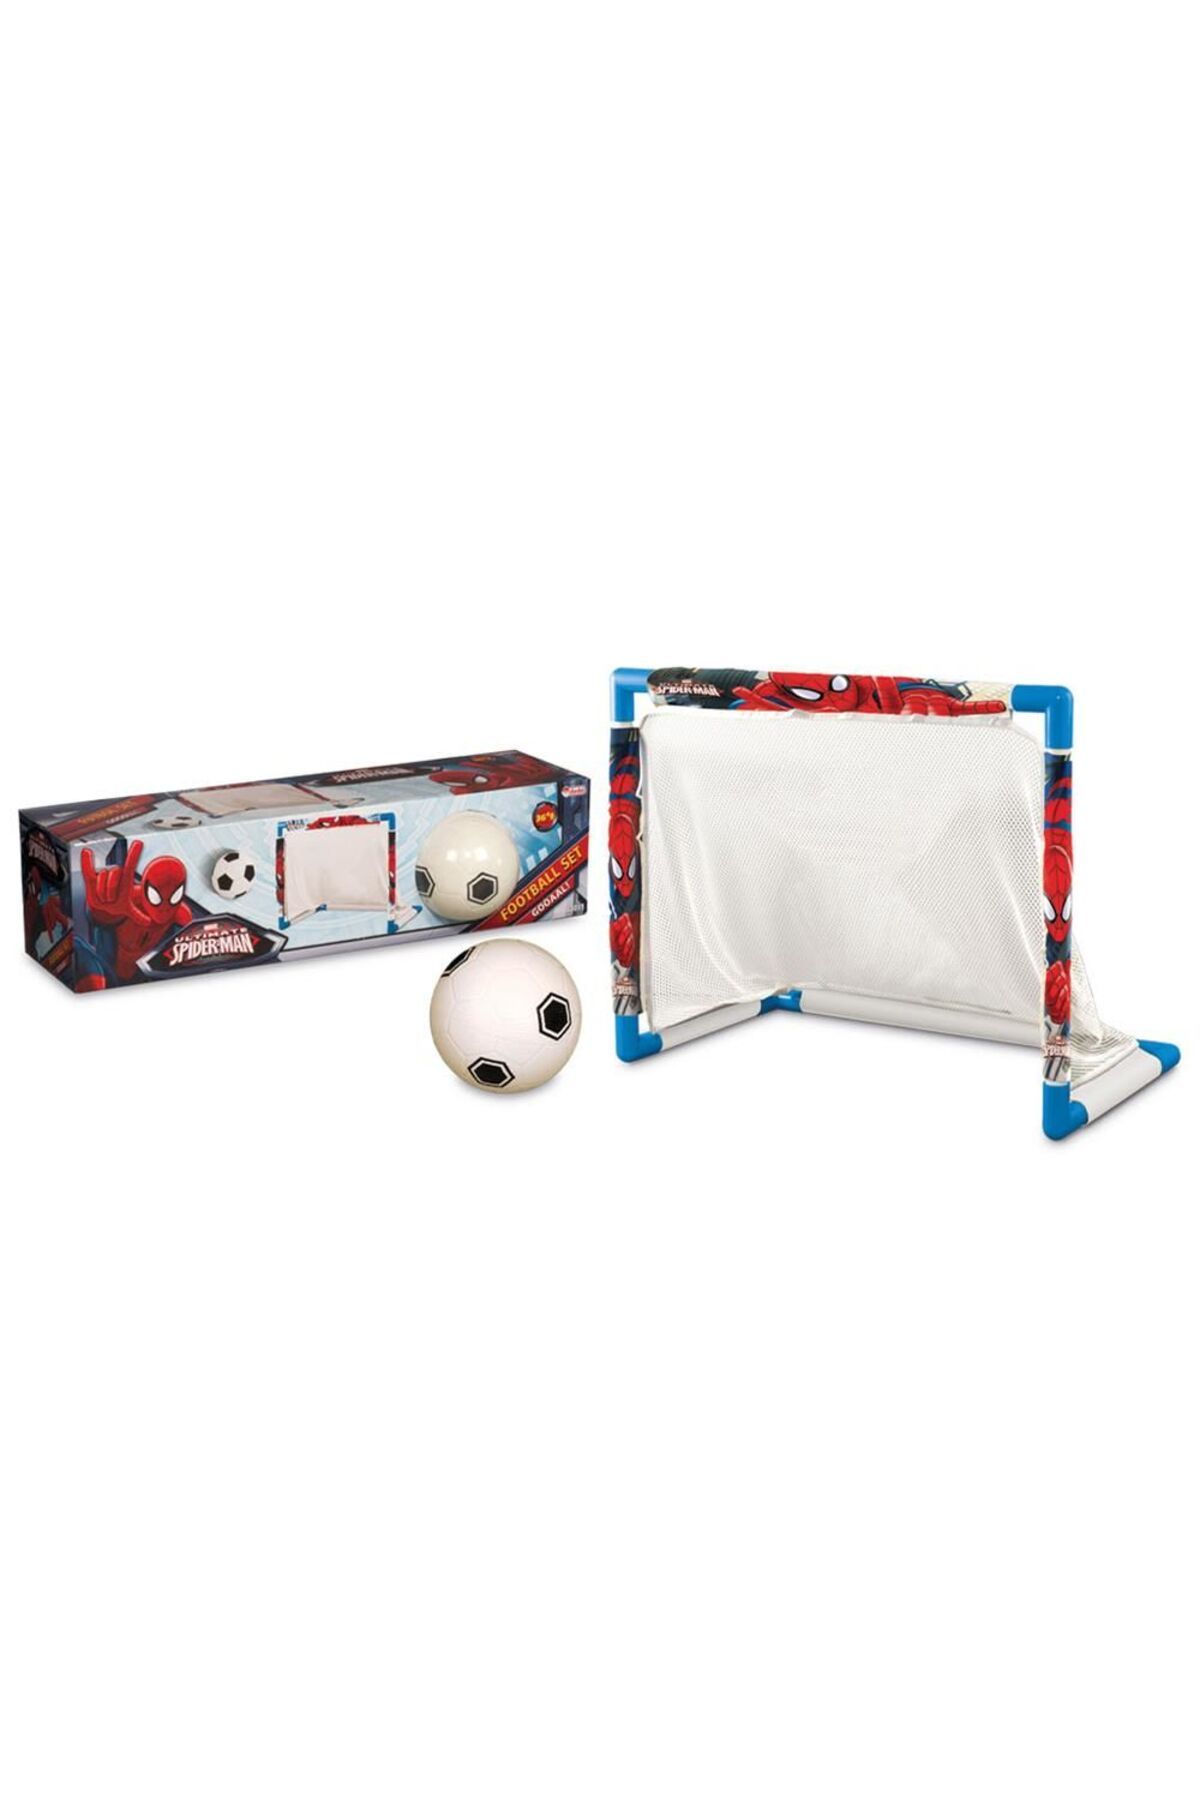 Angel Of Life Spiderman Futbol Minyatür Kale Seti